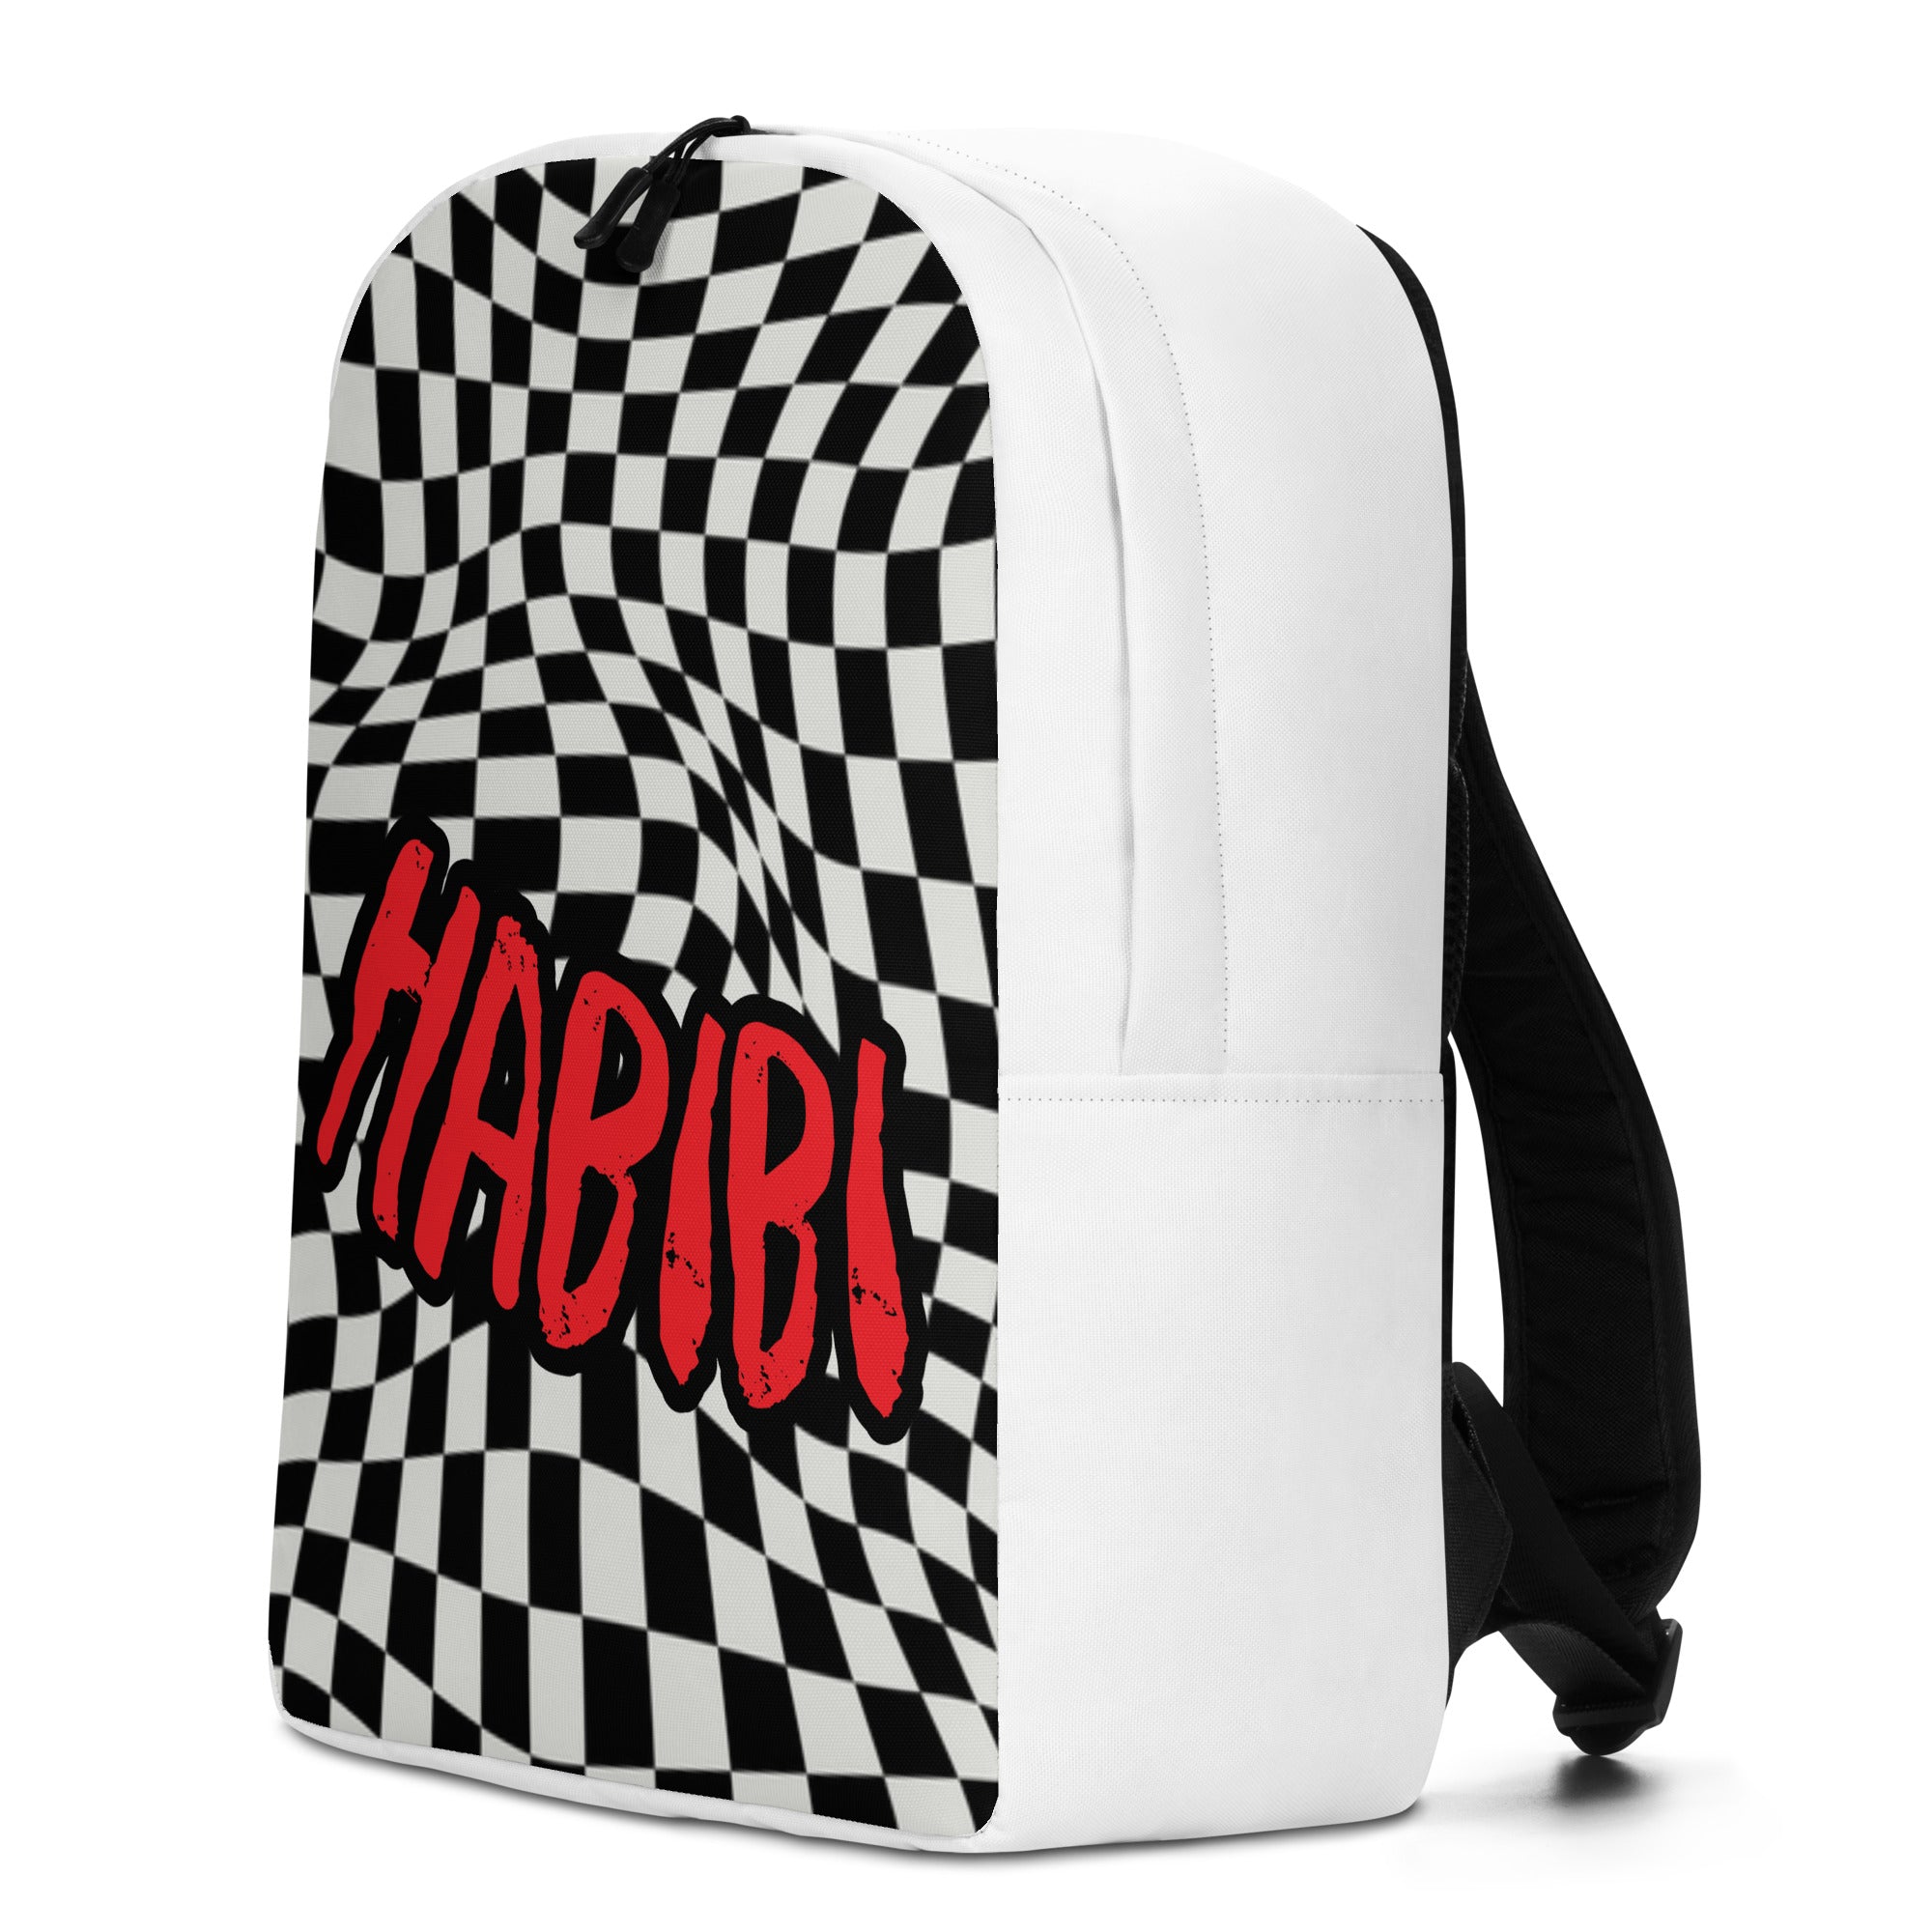 Habibi Backpack